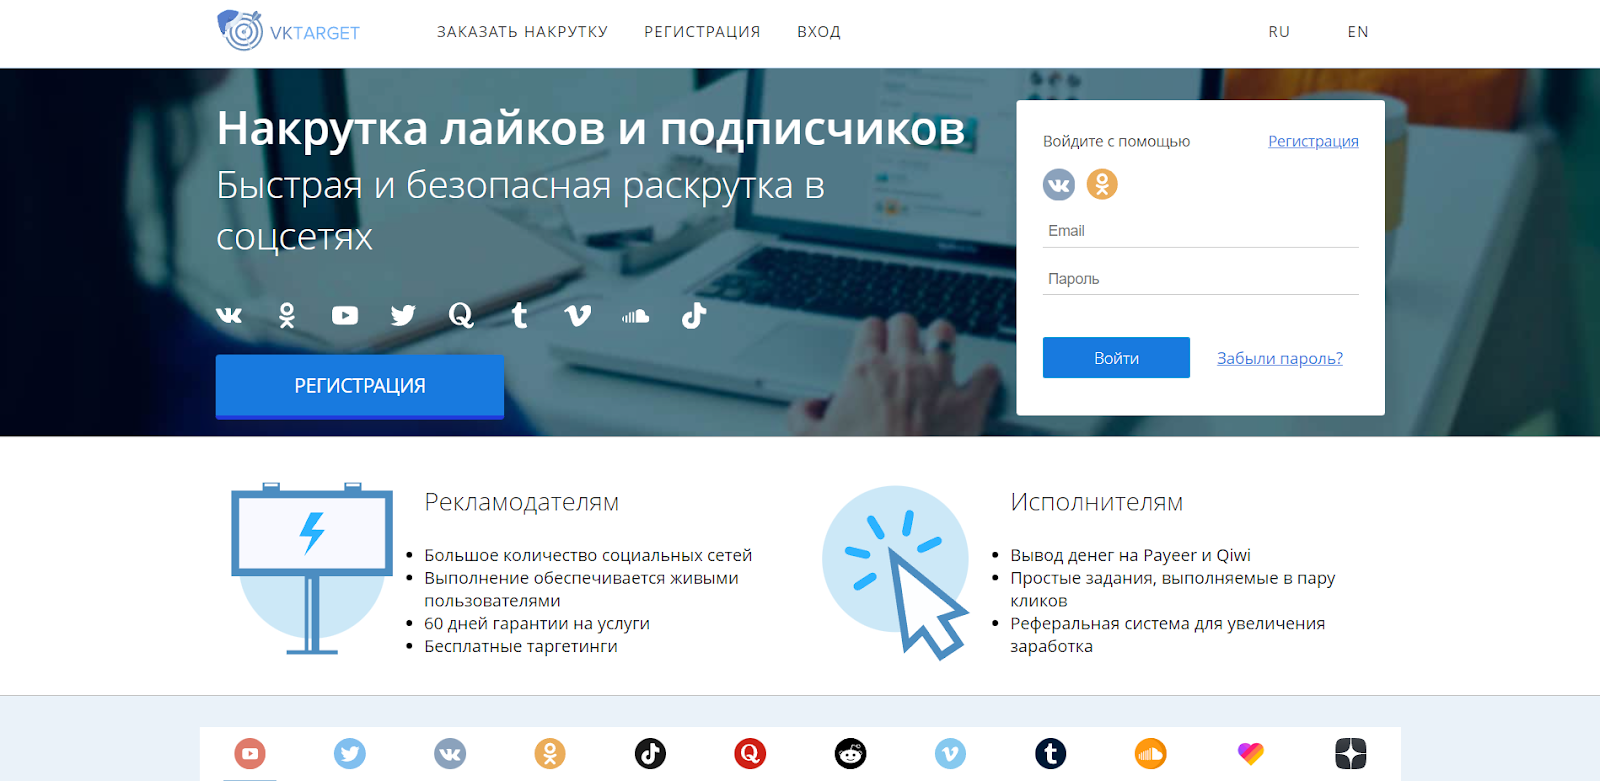 Как заработать на группе во ВКонтакте: полное руководство